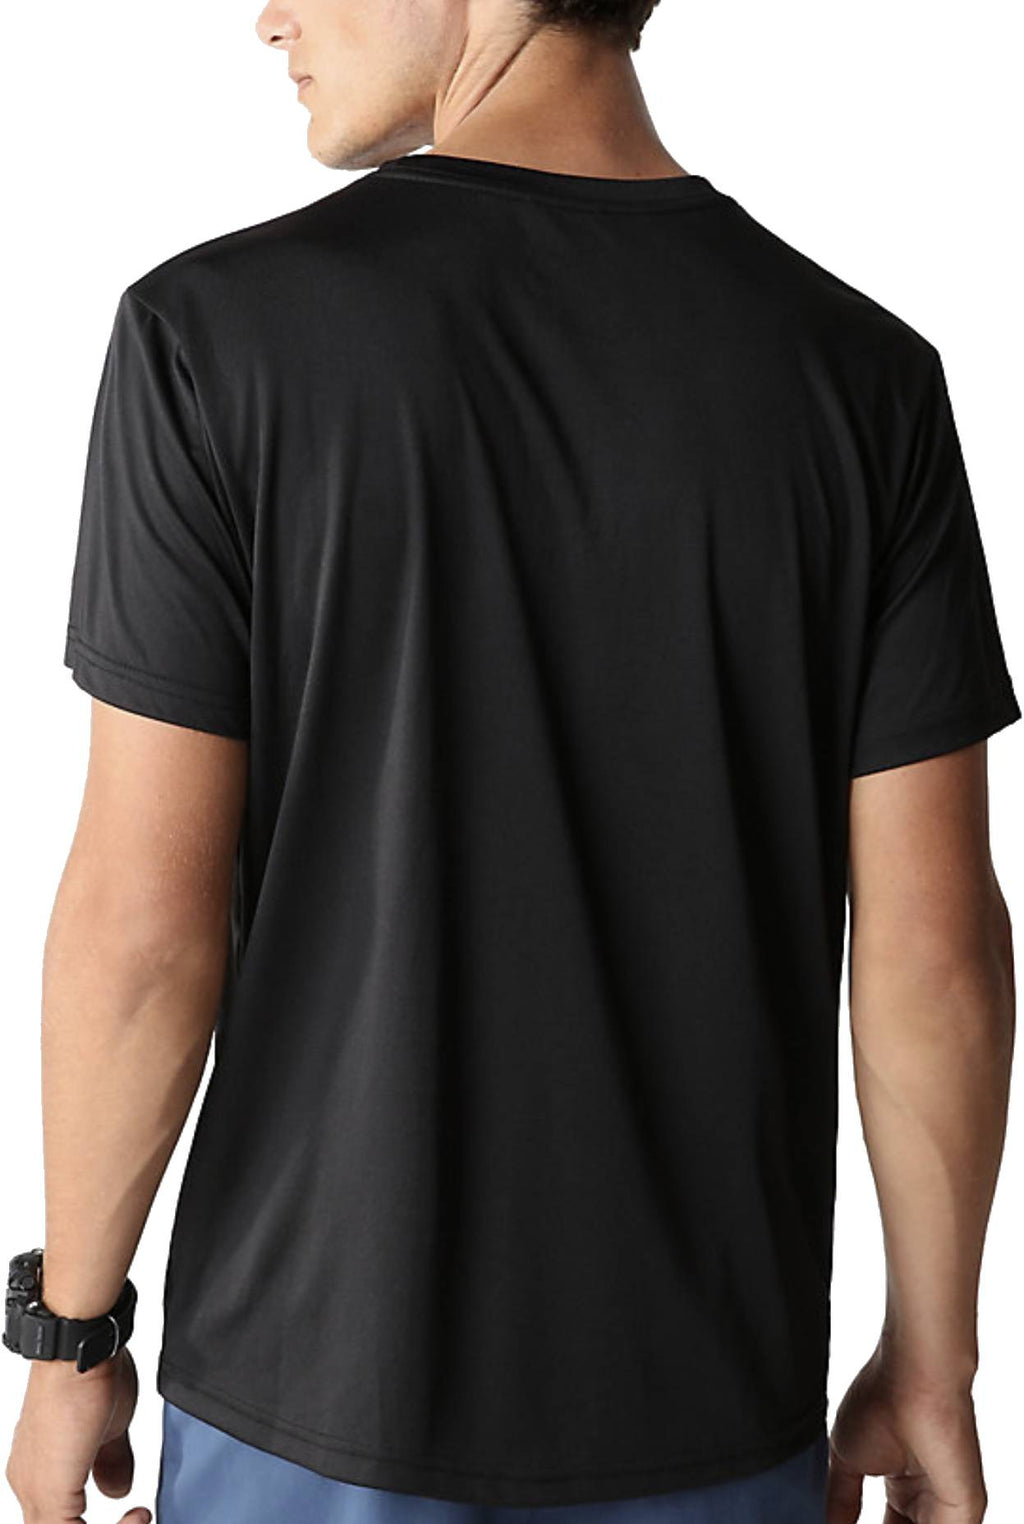  The North Face T-shirt Men's Reaxion Amp Crew Black Nero Uomo - 3